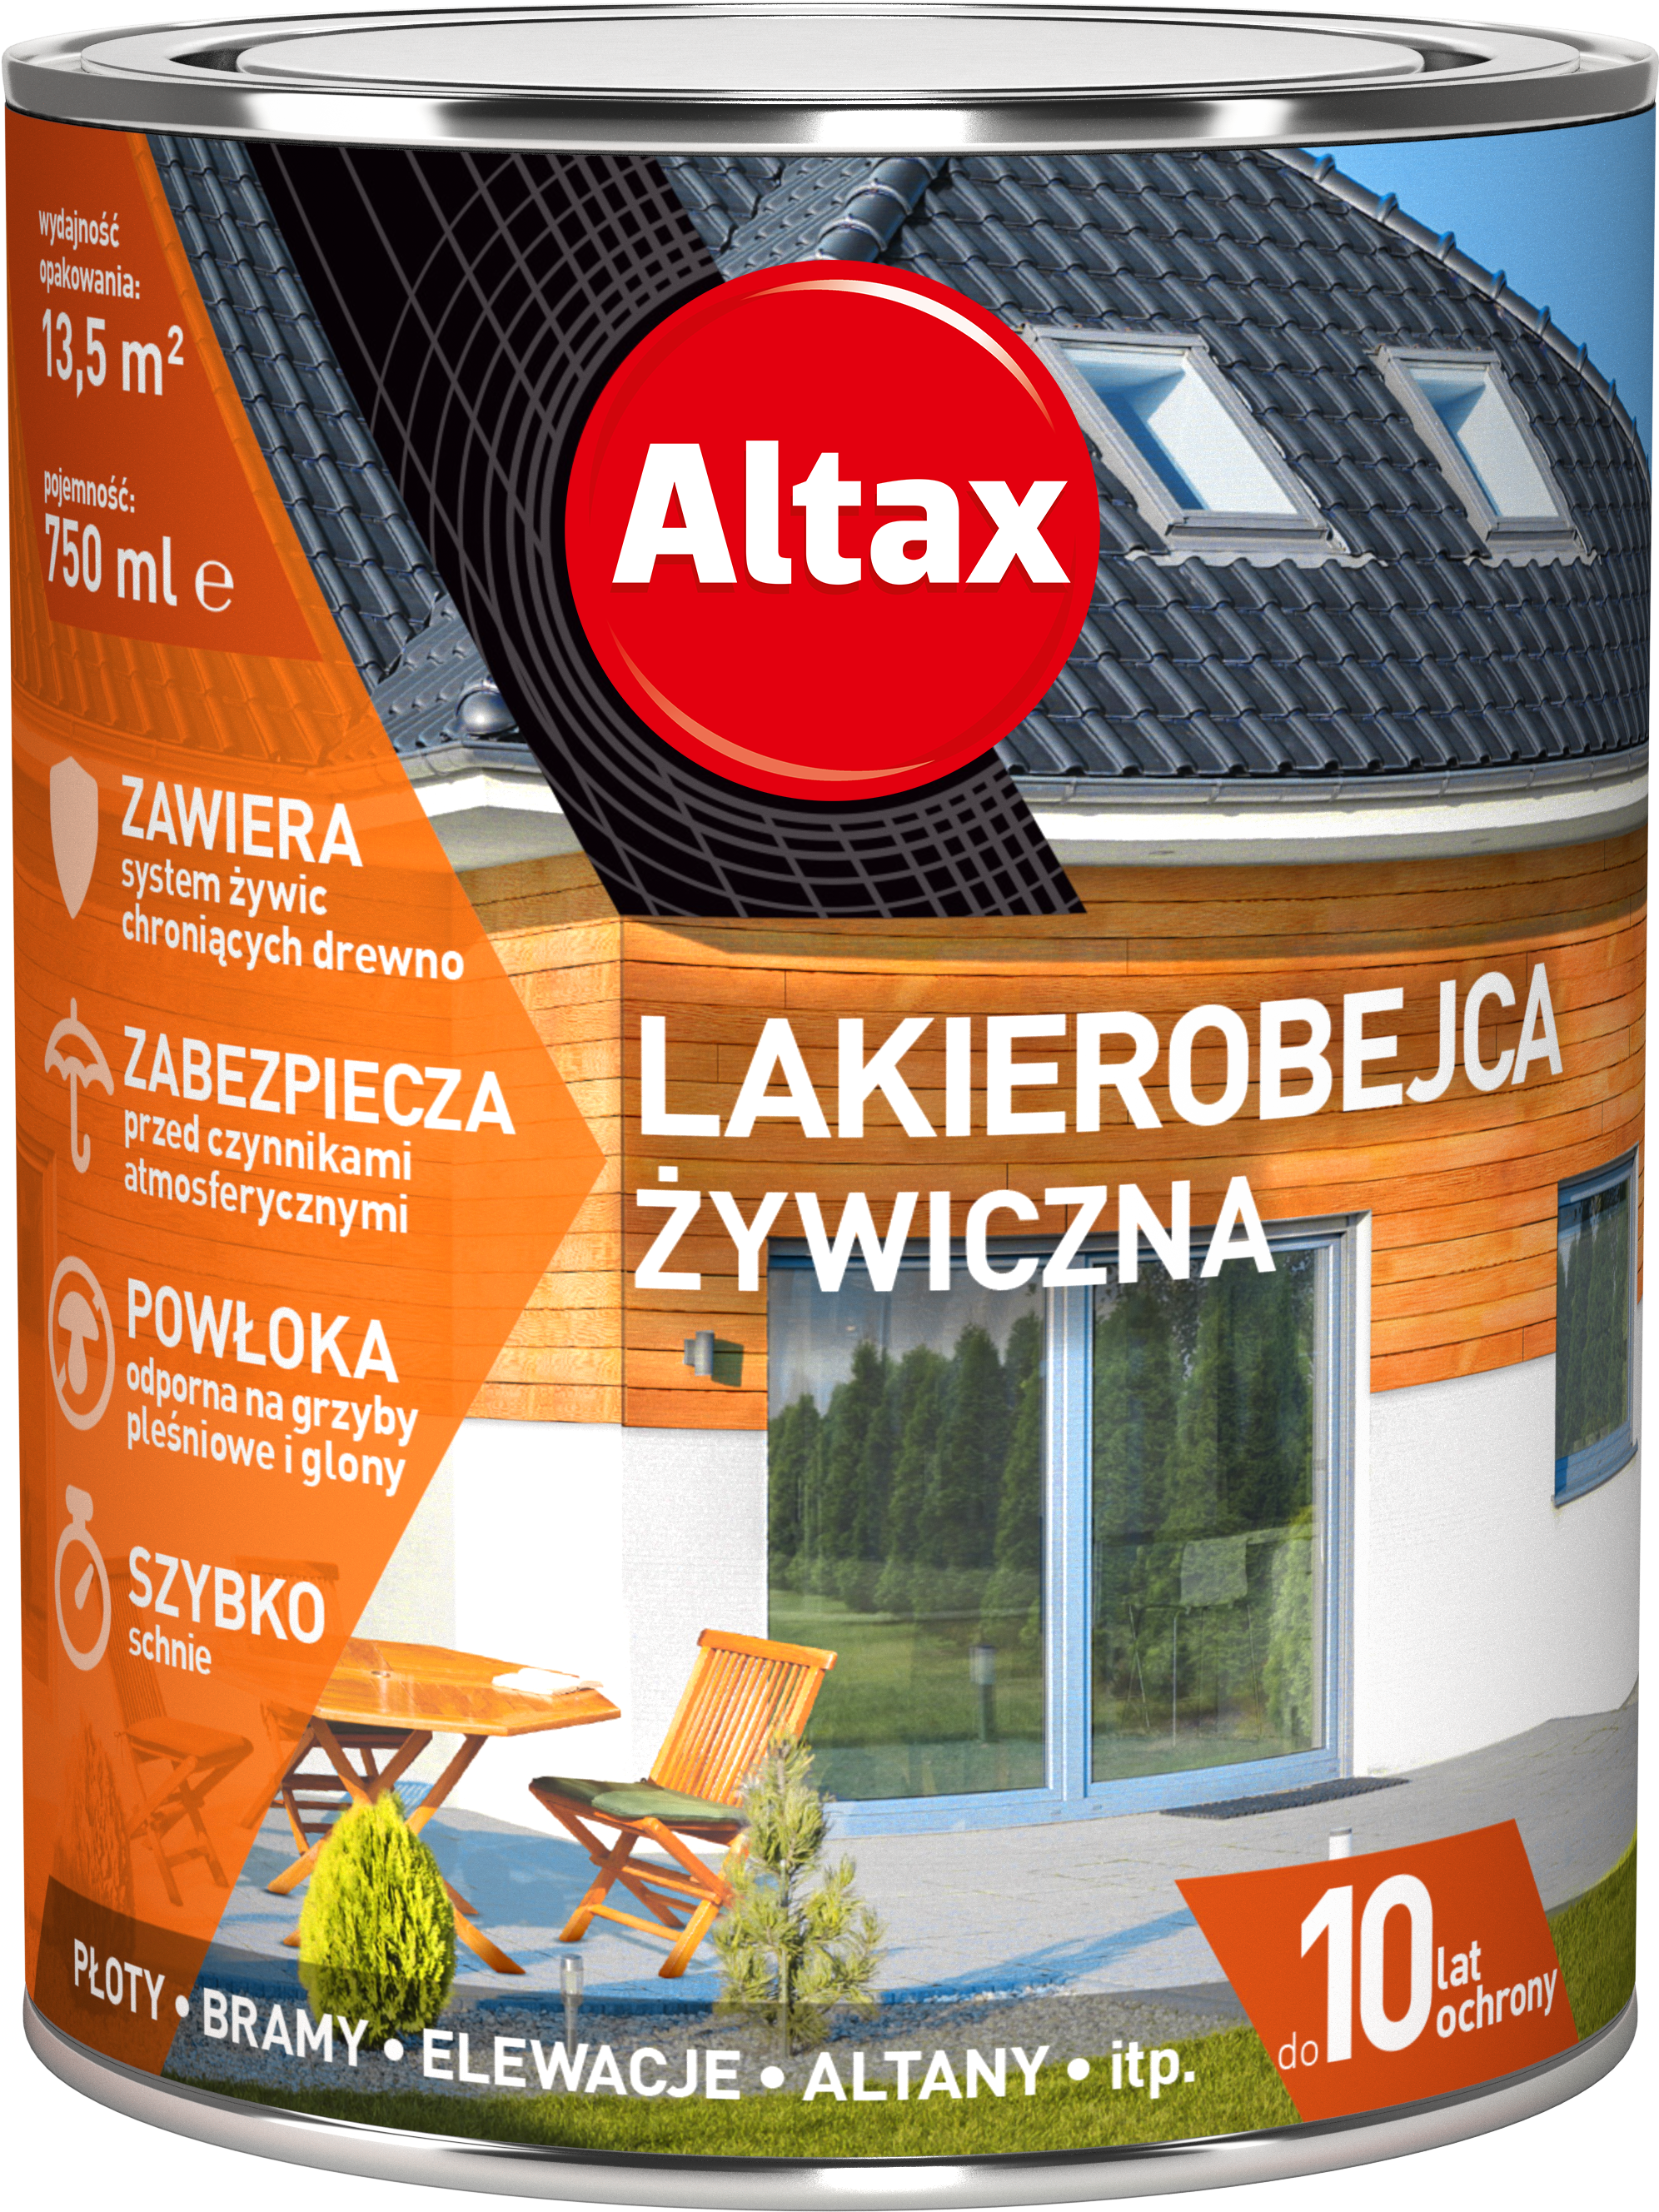 ALTAX-lakierobejca-zywiczna-750ml-01-duzy